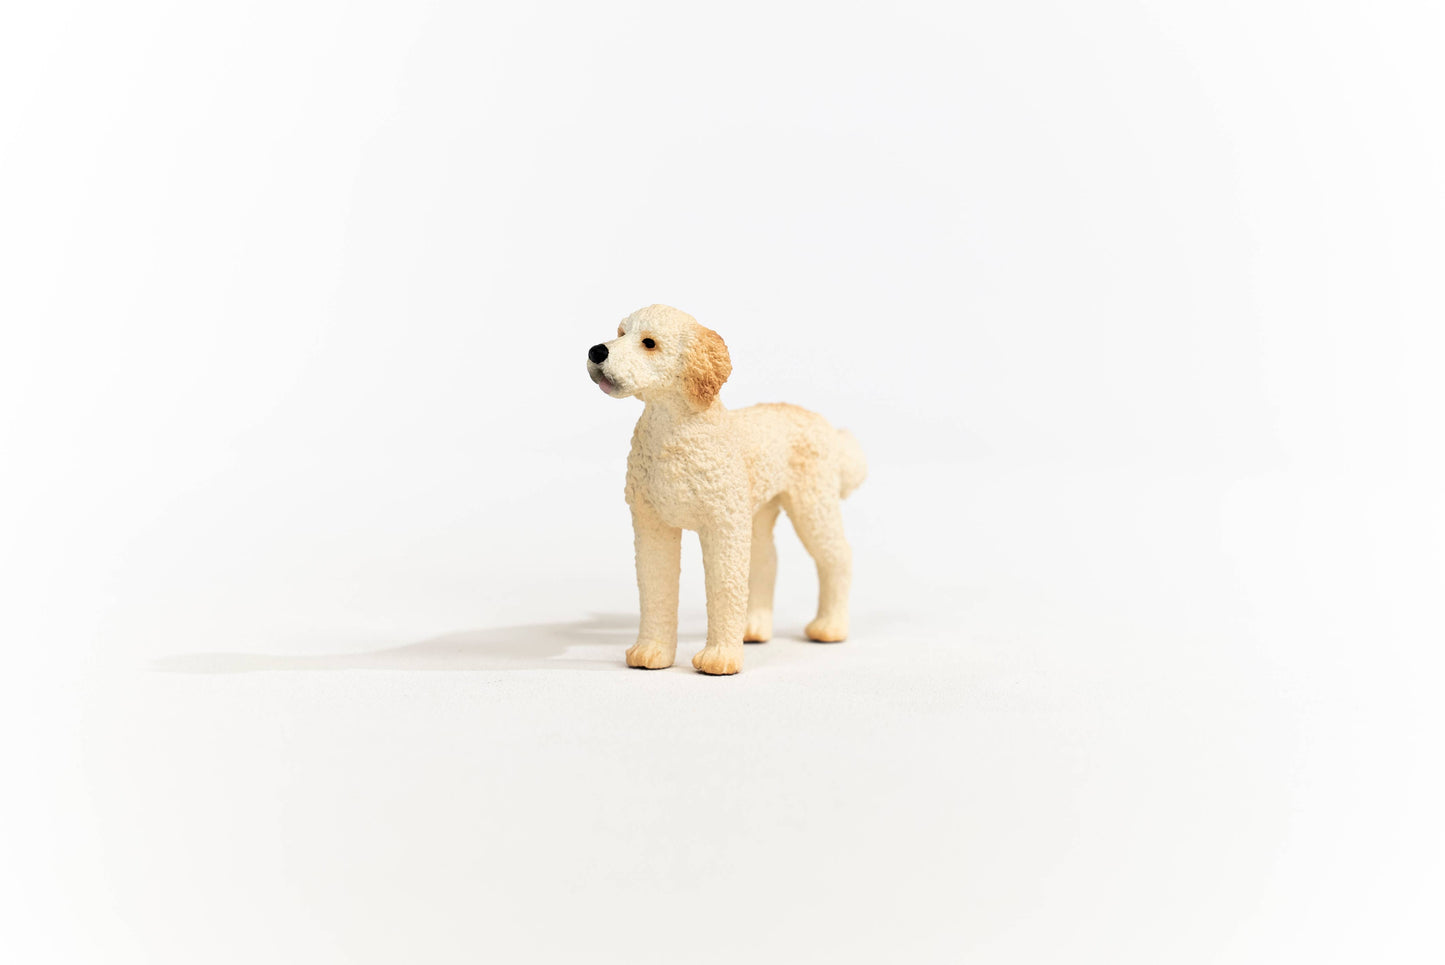 Goldendoodle Farm Dog Animal Toy